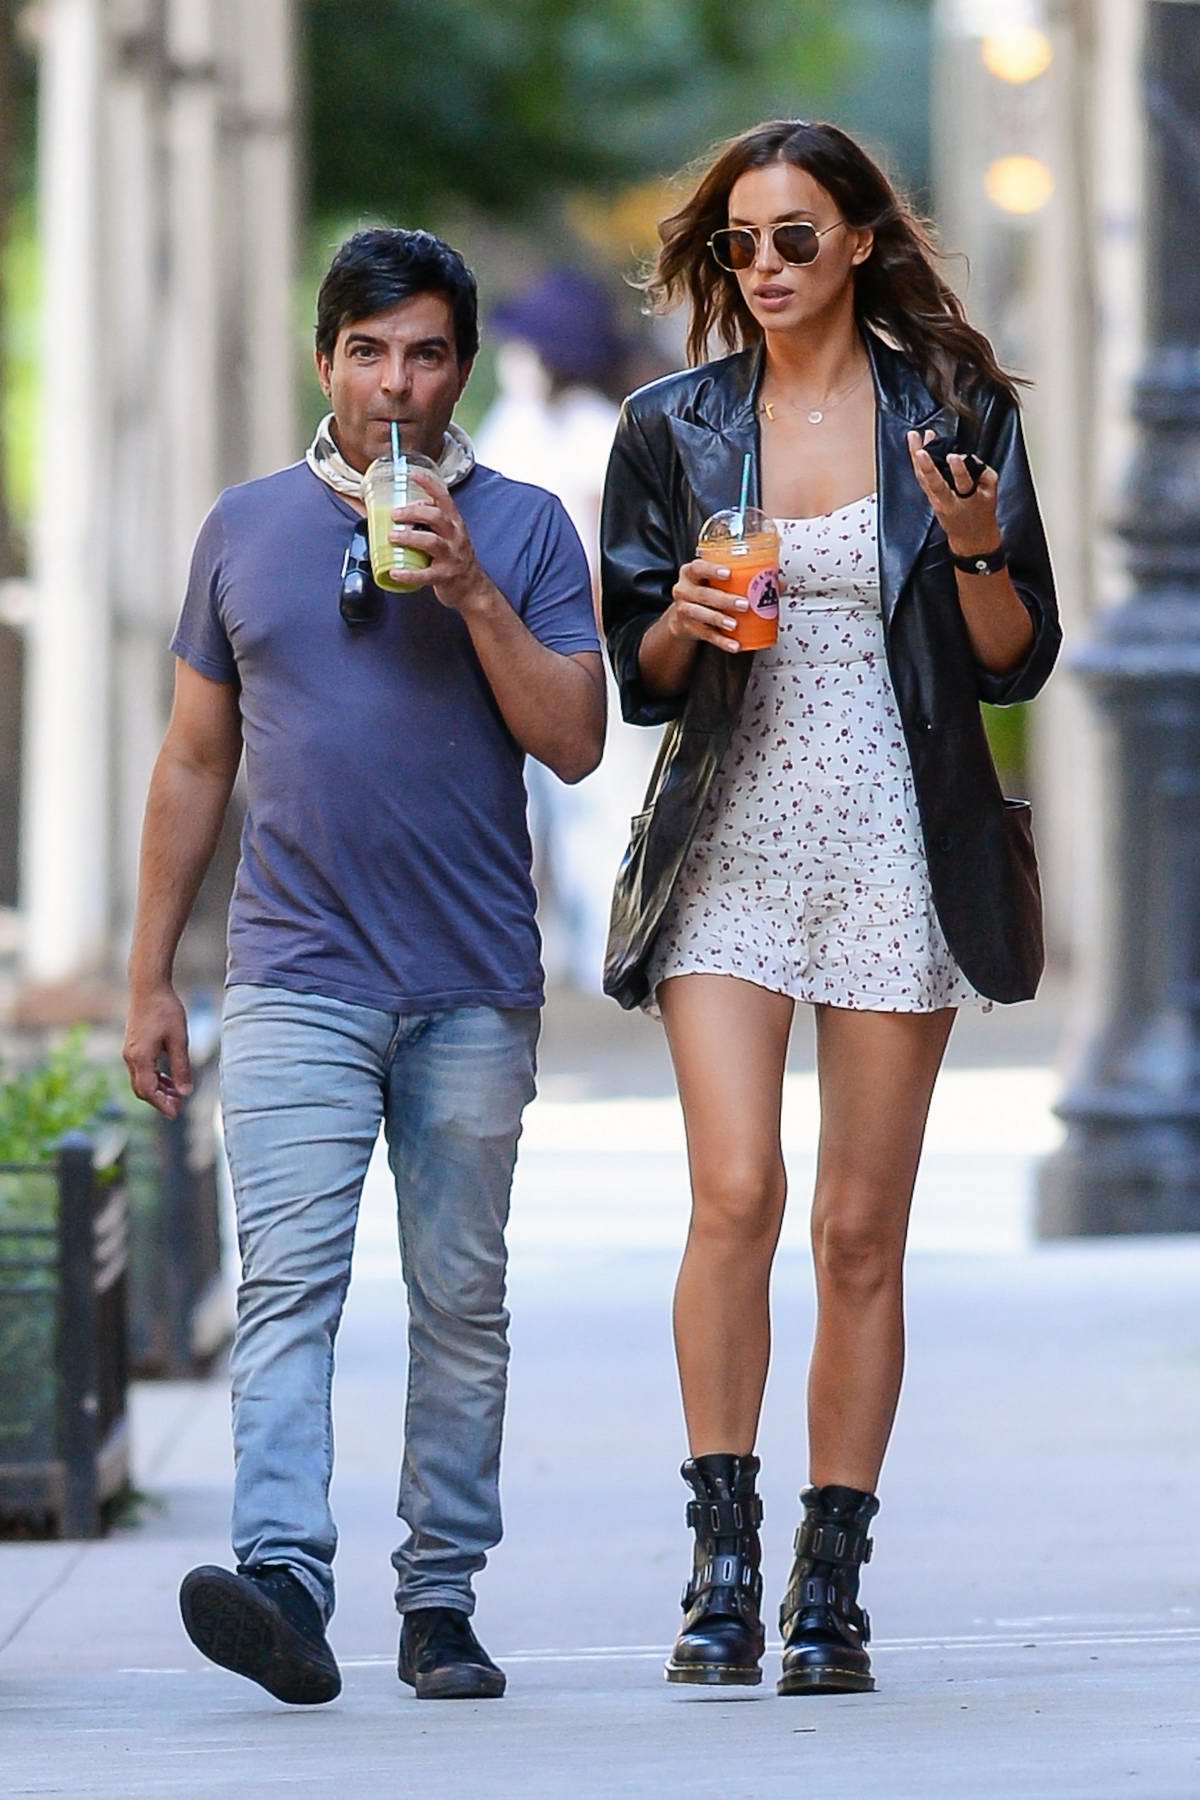 Irina Shayk Looks Chic in Max Mara During a Juice Run in New York City